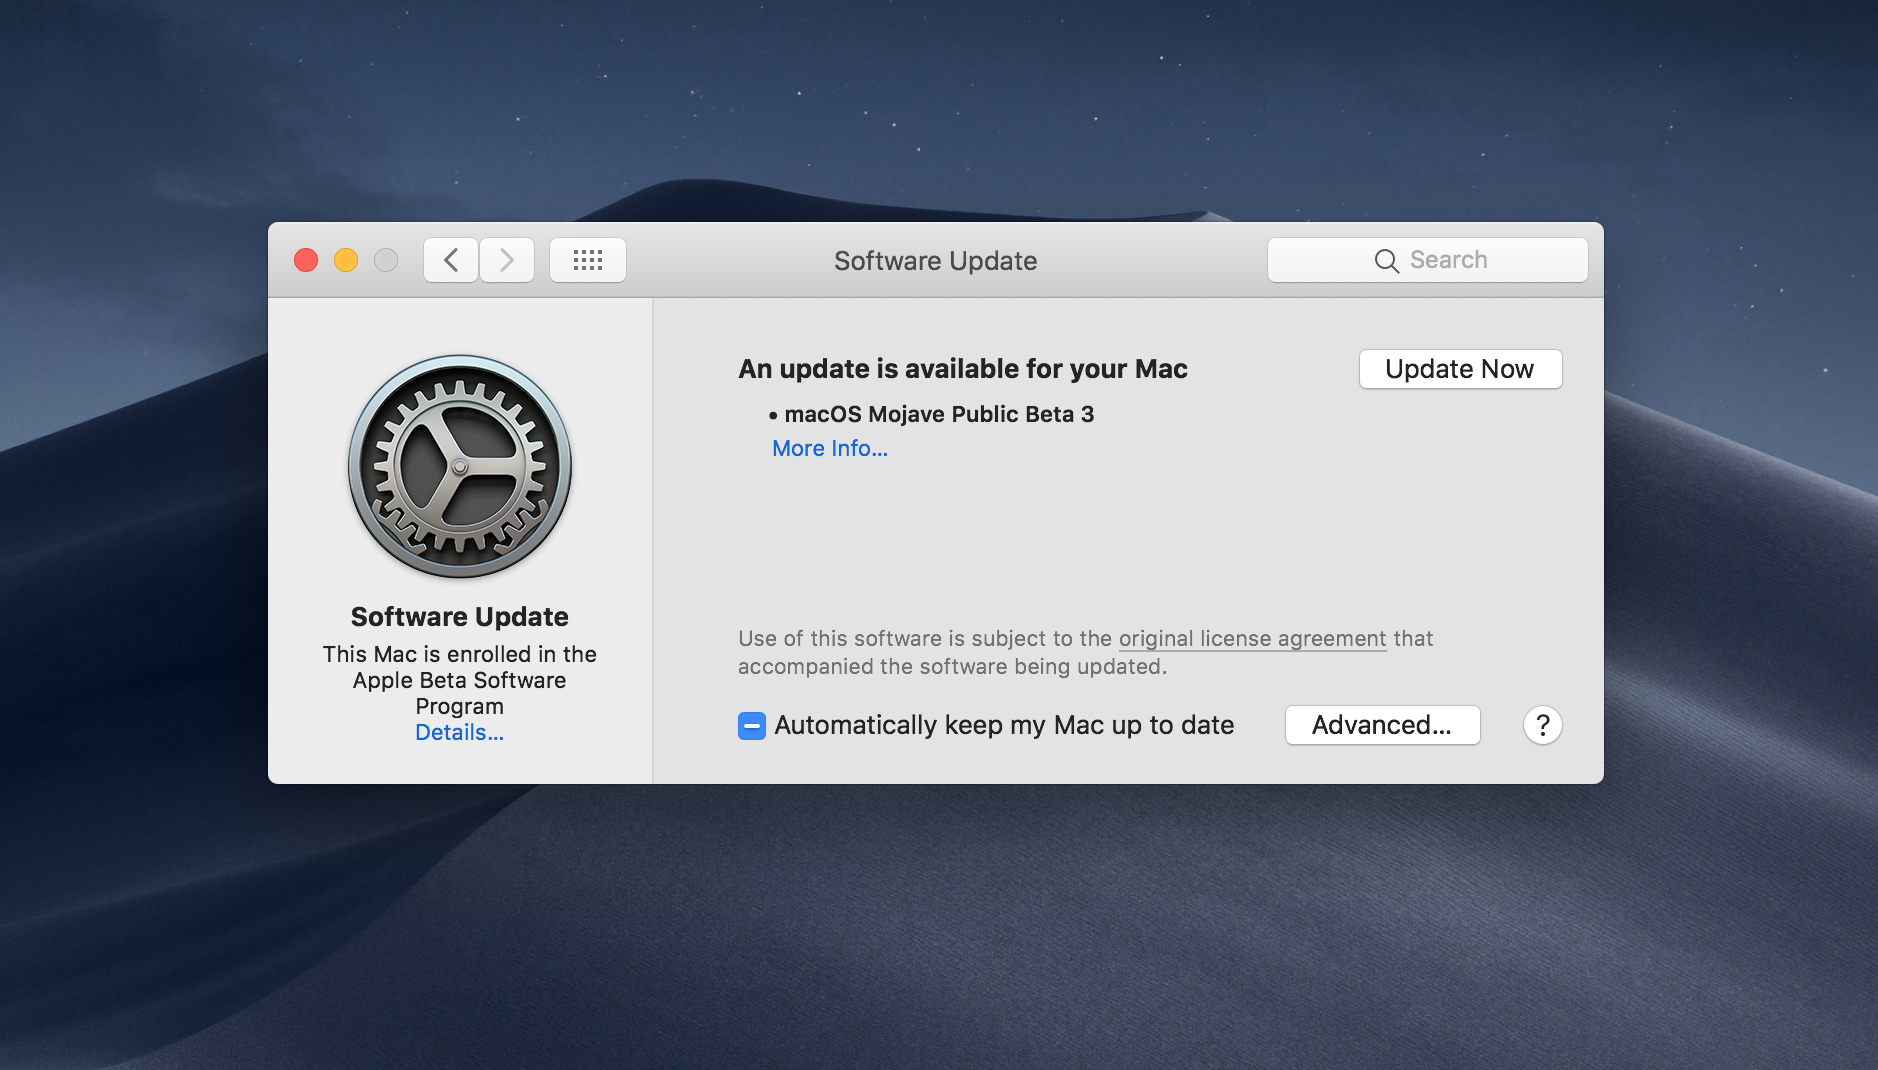 Chia sẻ về Apple OS, phải chăng người dùng luôn là con rối với các bản cập nhật mới?